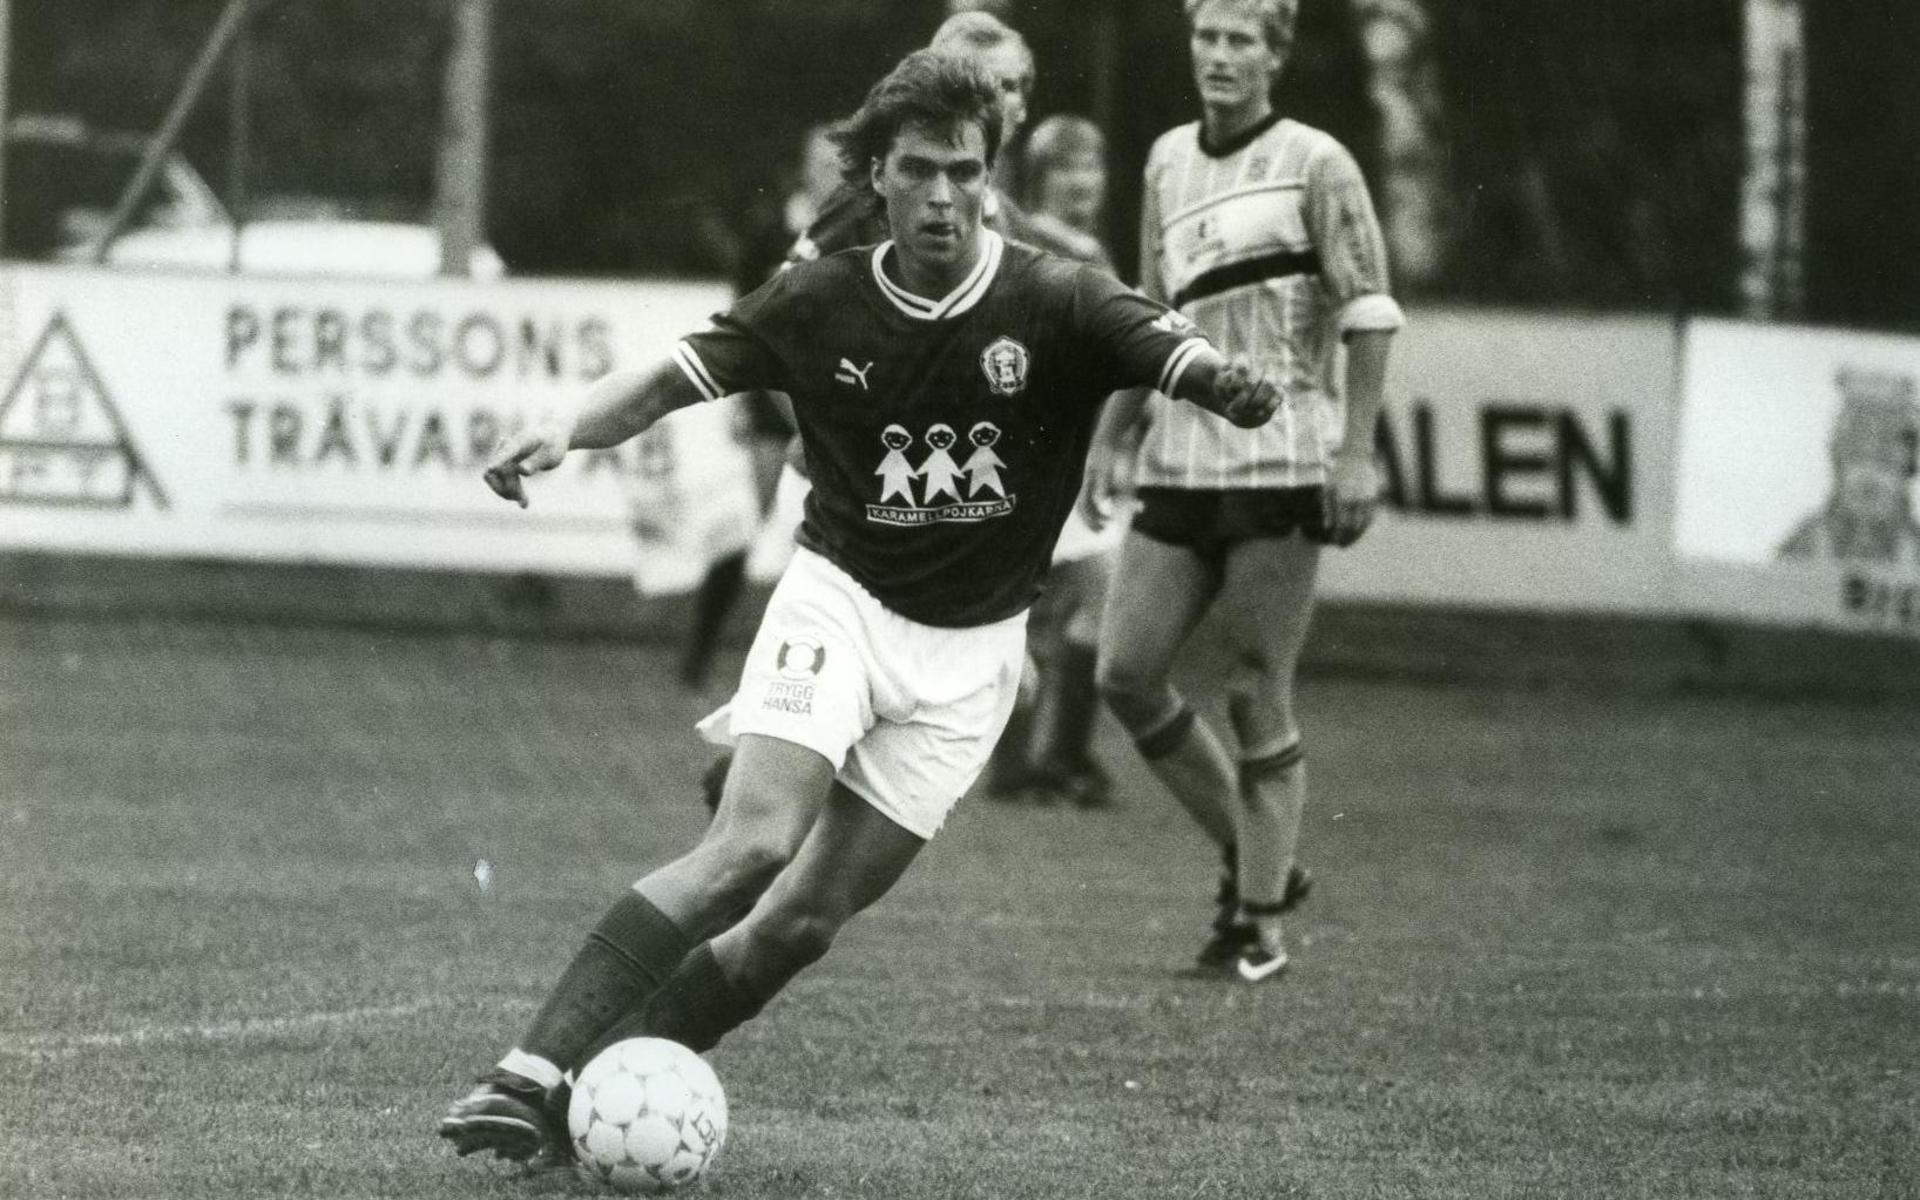 Christer ”Pinnen” Mårtensson är numera sportchef i Alingsås HK och var en duktig kantspringare på sin tid. Men han var även begåvad på fotbollsplanen där AIF var hans lag.